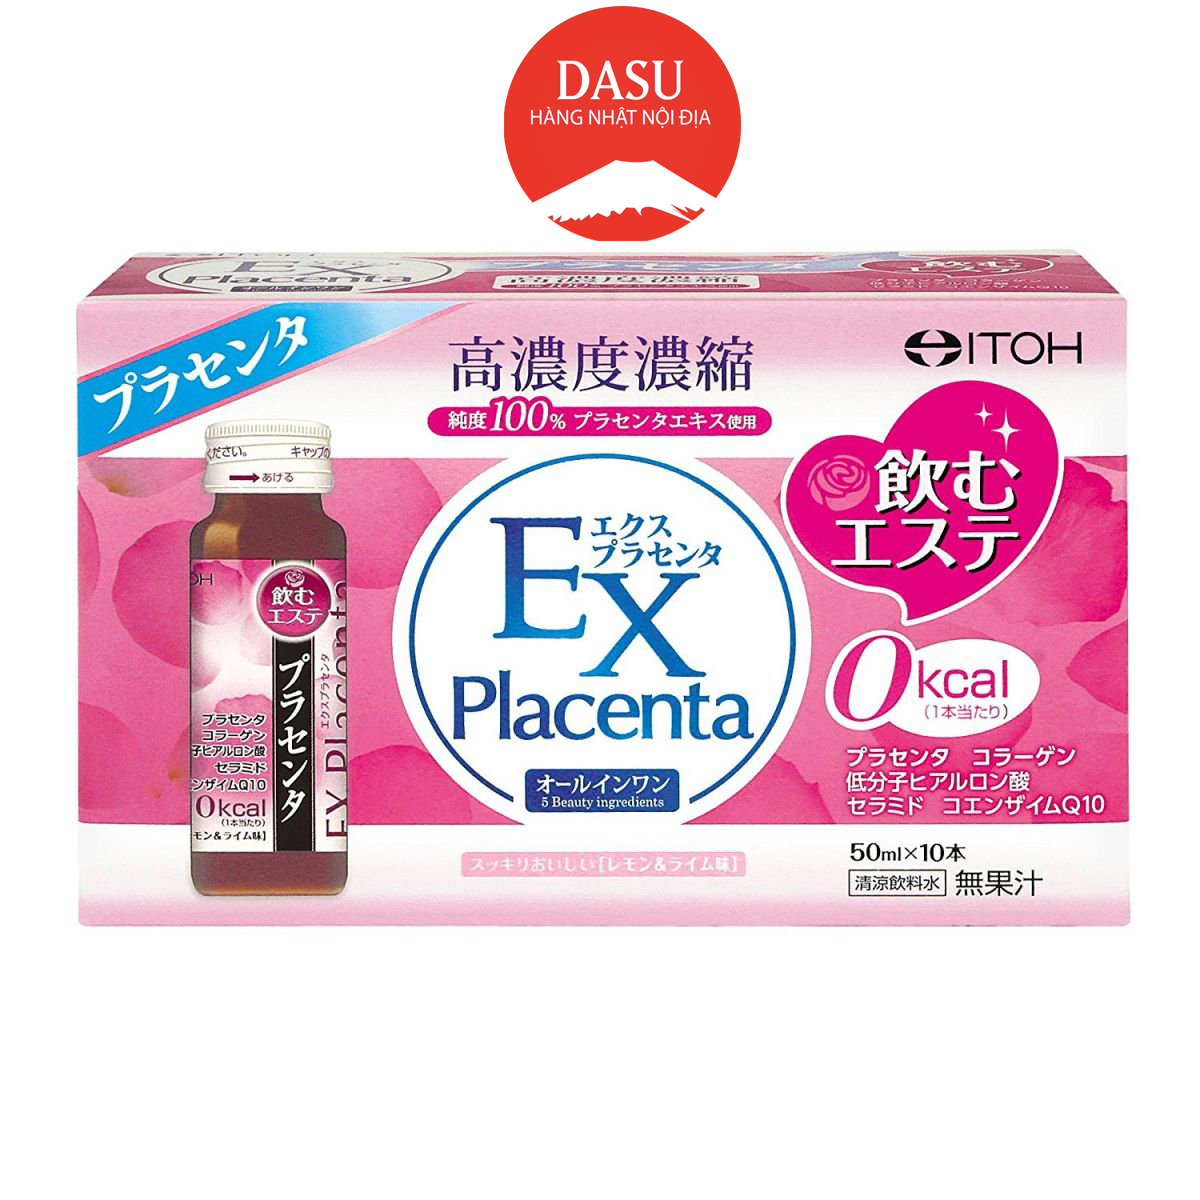 HCMNước Uống sáng da Bổ Sung Collagen Naris ITOH EX Placenta 1 hộp 10 lọ 1